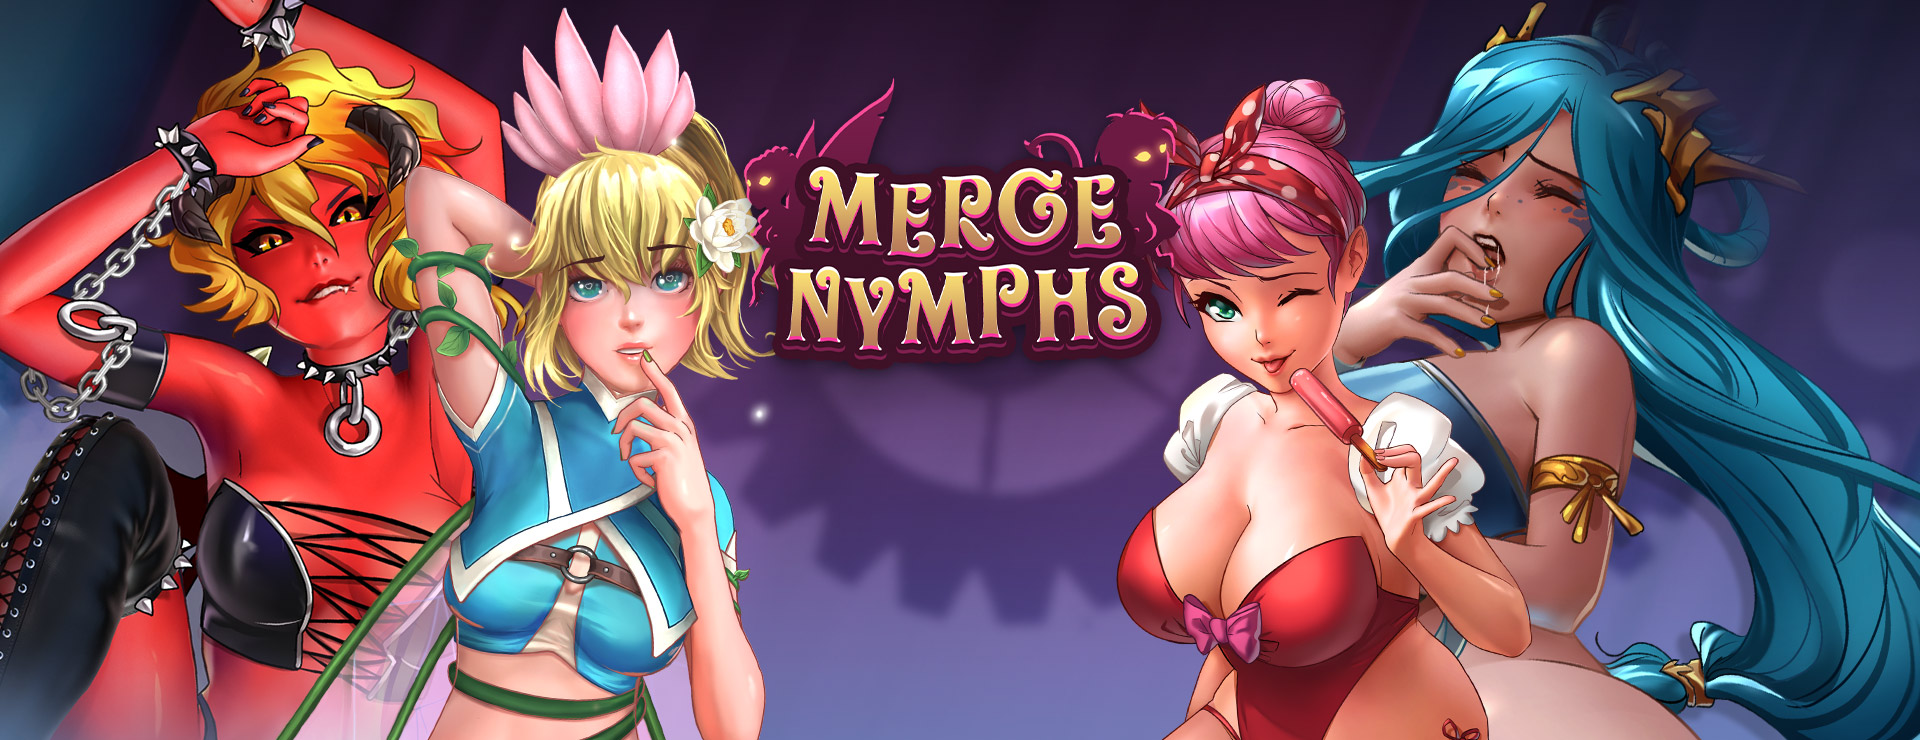 Merge Nymphs Game - カジュアル ゲーム